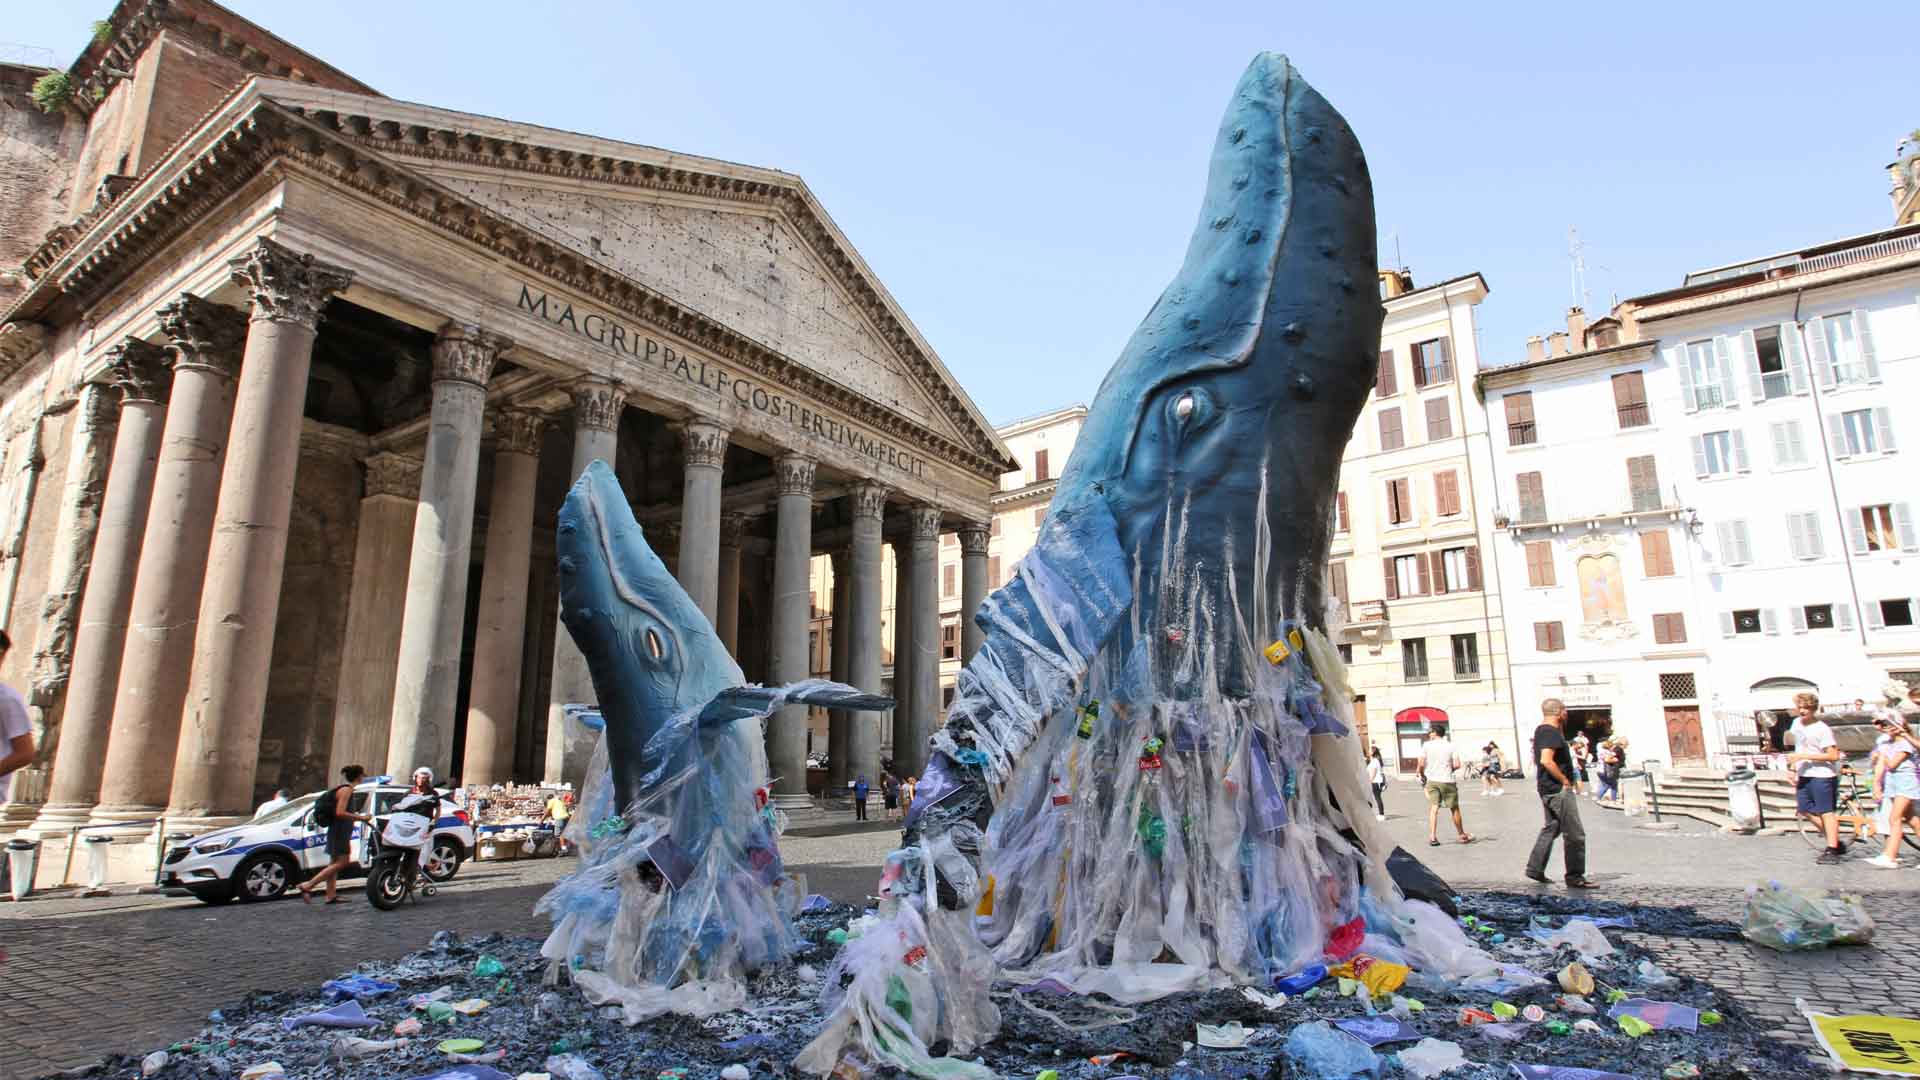 El G20 acuerda crear un marco global para reducir los residuos plásticos marinos